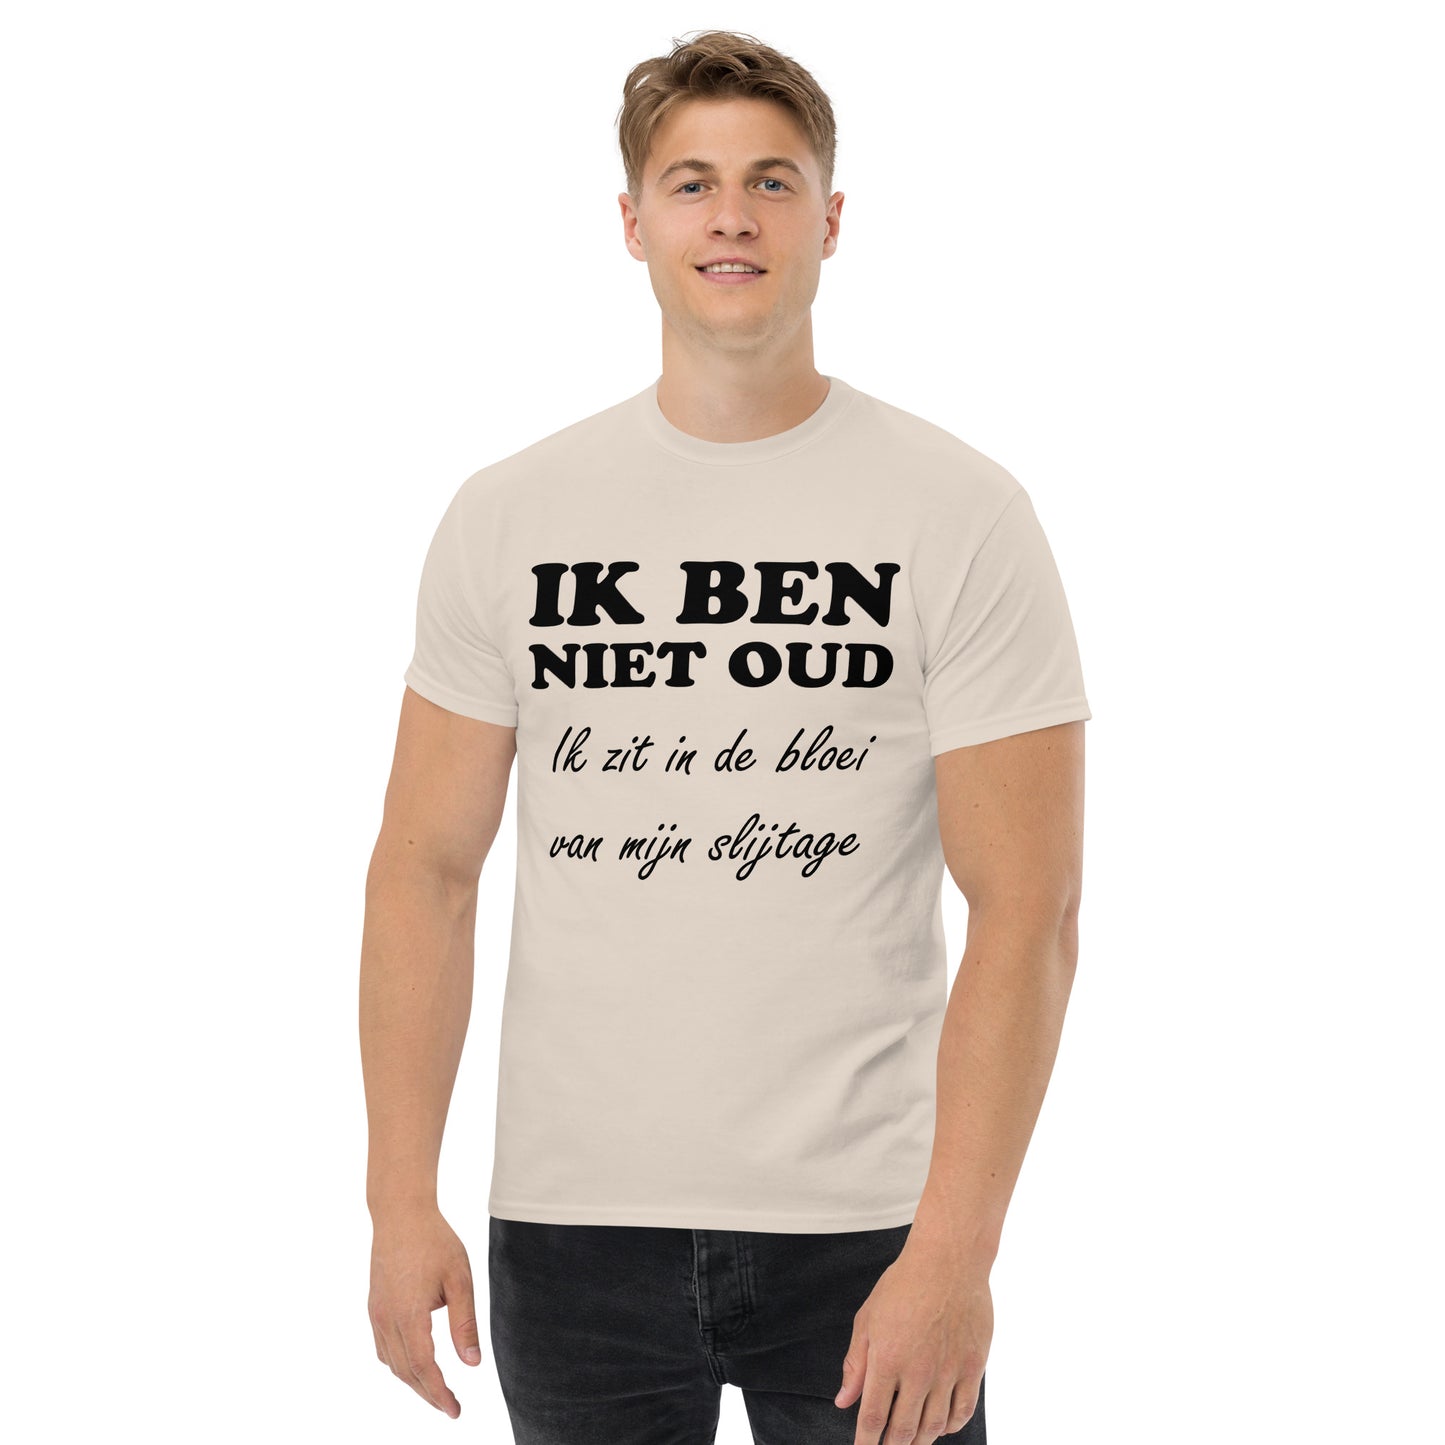 Natural T-shirt with the text "IK BEN NIET OUD ik zit in de bloei van mijn slijtage"